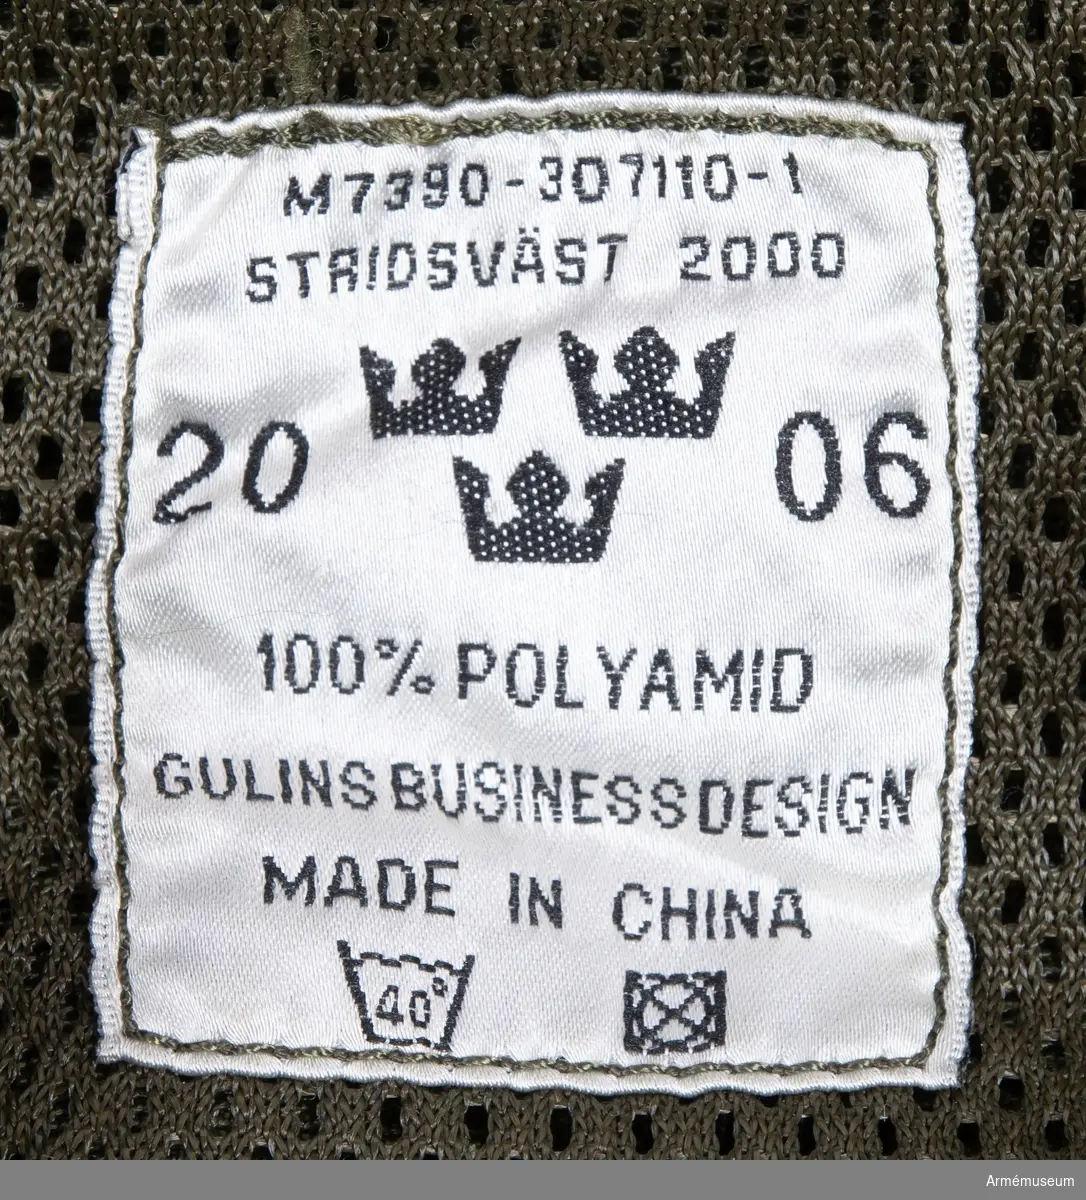 Stridsväst M 7390-307110-1
Tillverkad 2006 av Gulins businessdesign, Kina.
100% polyamid.
Bälte-stridsväst M 7390-307500-3
Tillverkad 2002 av Sacci Ryggsäckar AB, Vietnam.
100% polyamid.
På stridsvästen och vidhängande bälte hänger fyra löstagbara fickor och två löstagbara dricksflaskor.